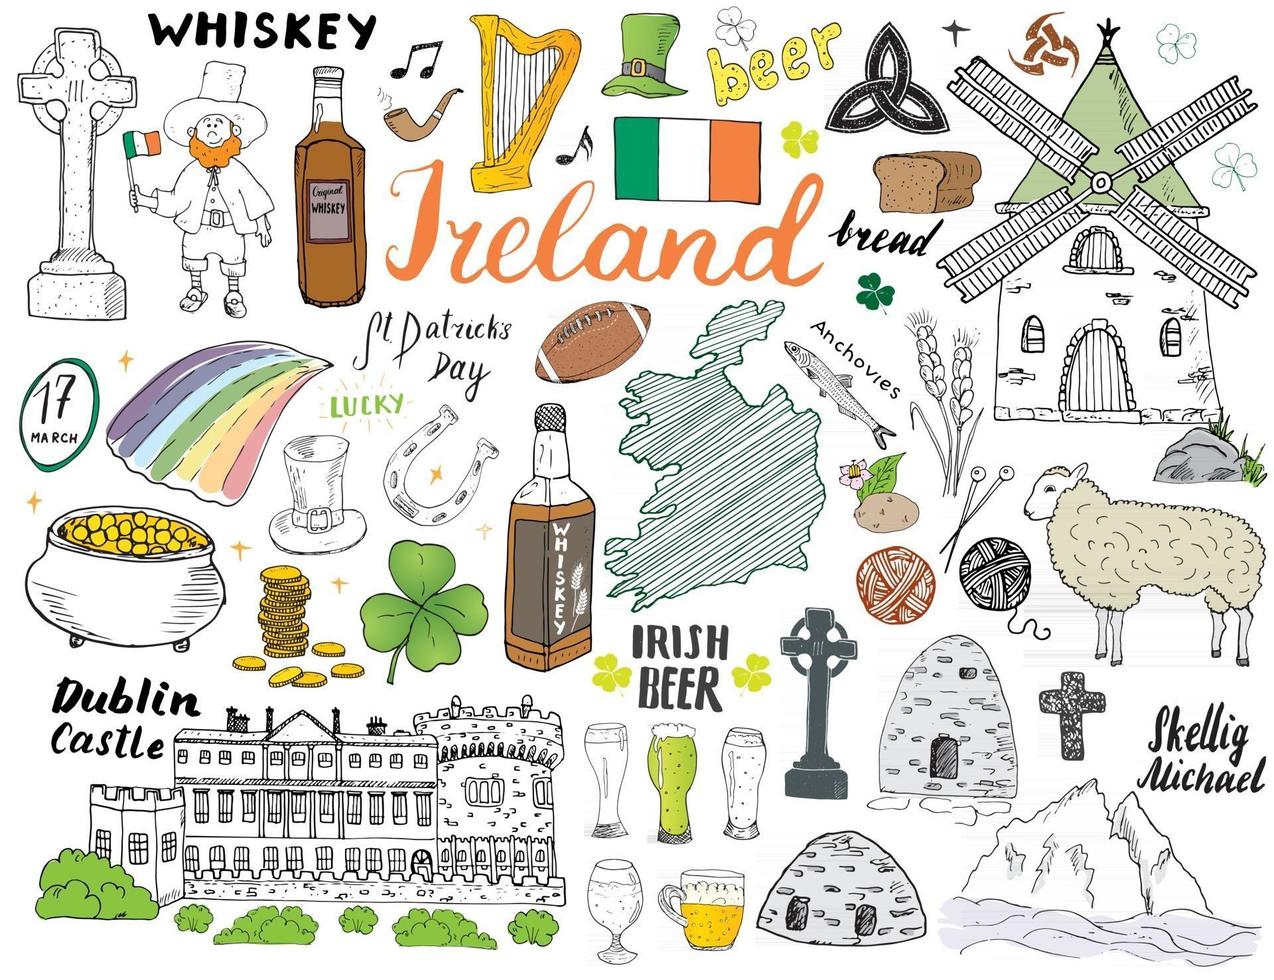 Irland skiss doodles. handritad irländska element med flagga och karta över Irland, keltiskt kors, slott, shamrock, keltisk harpa, kvarn och får, whiskyflaskor och irländsk öl, vektorillustration vektor